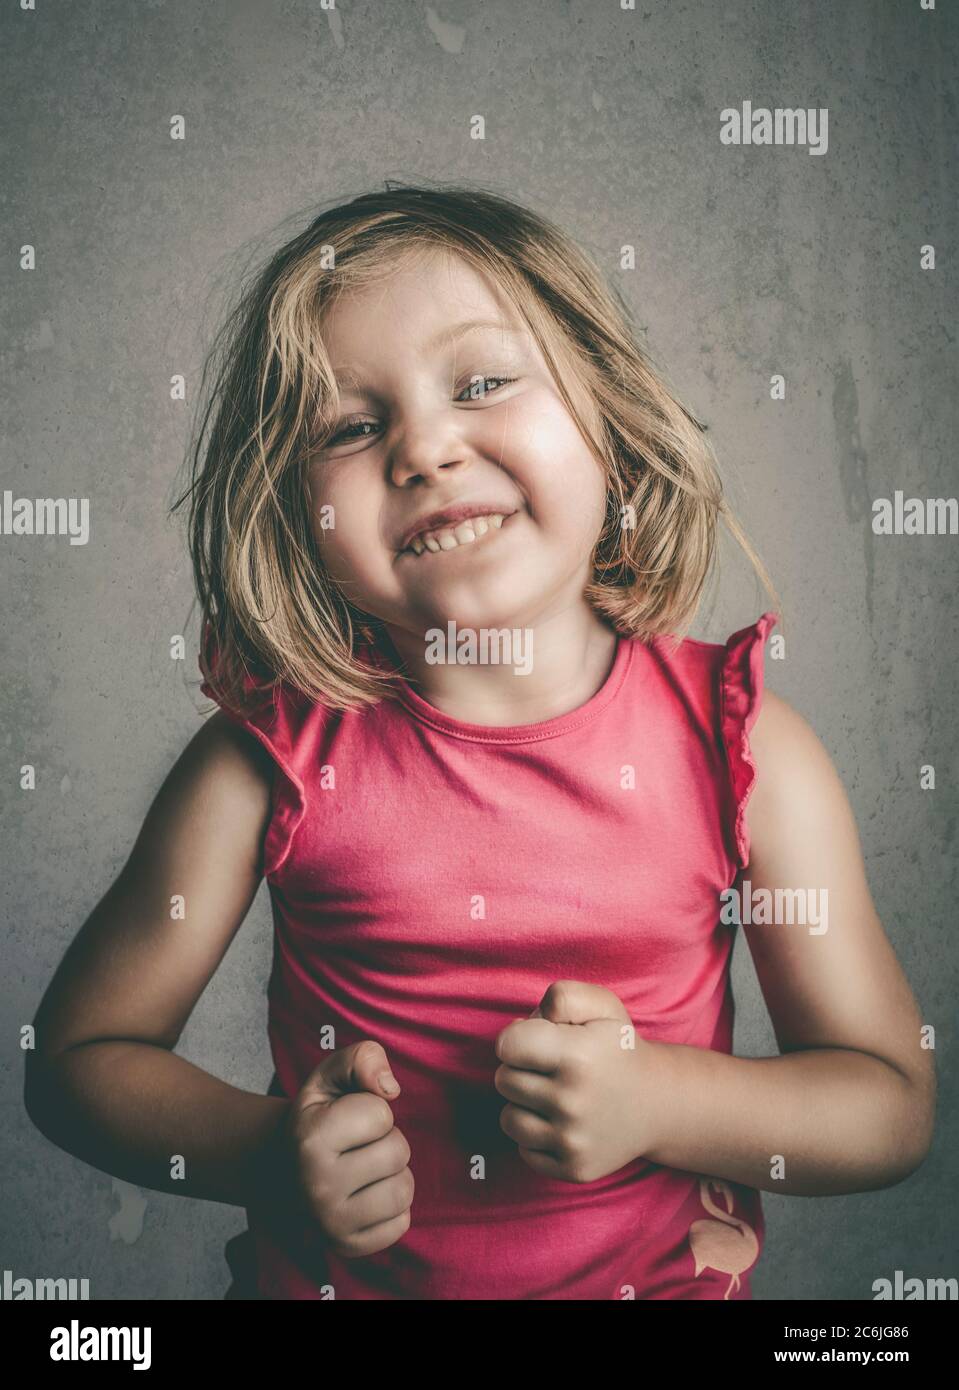 studio portrait d'une fille de 4 ans posant faisant un visage drôle. Banque D'Images